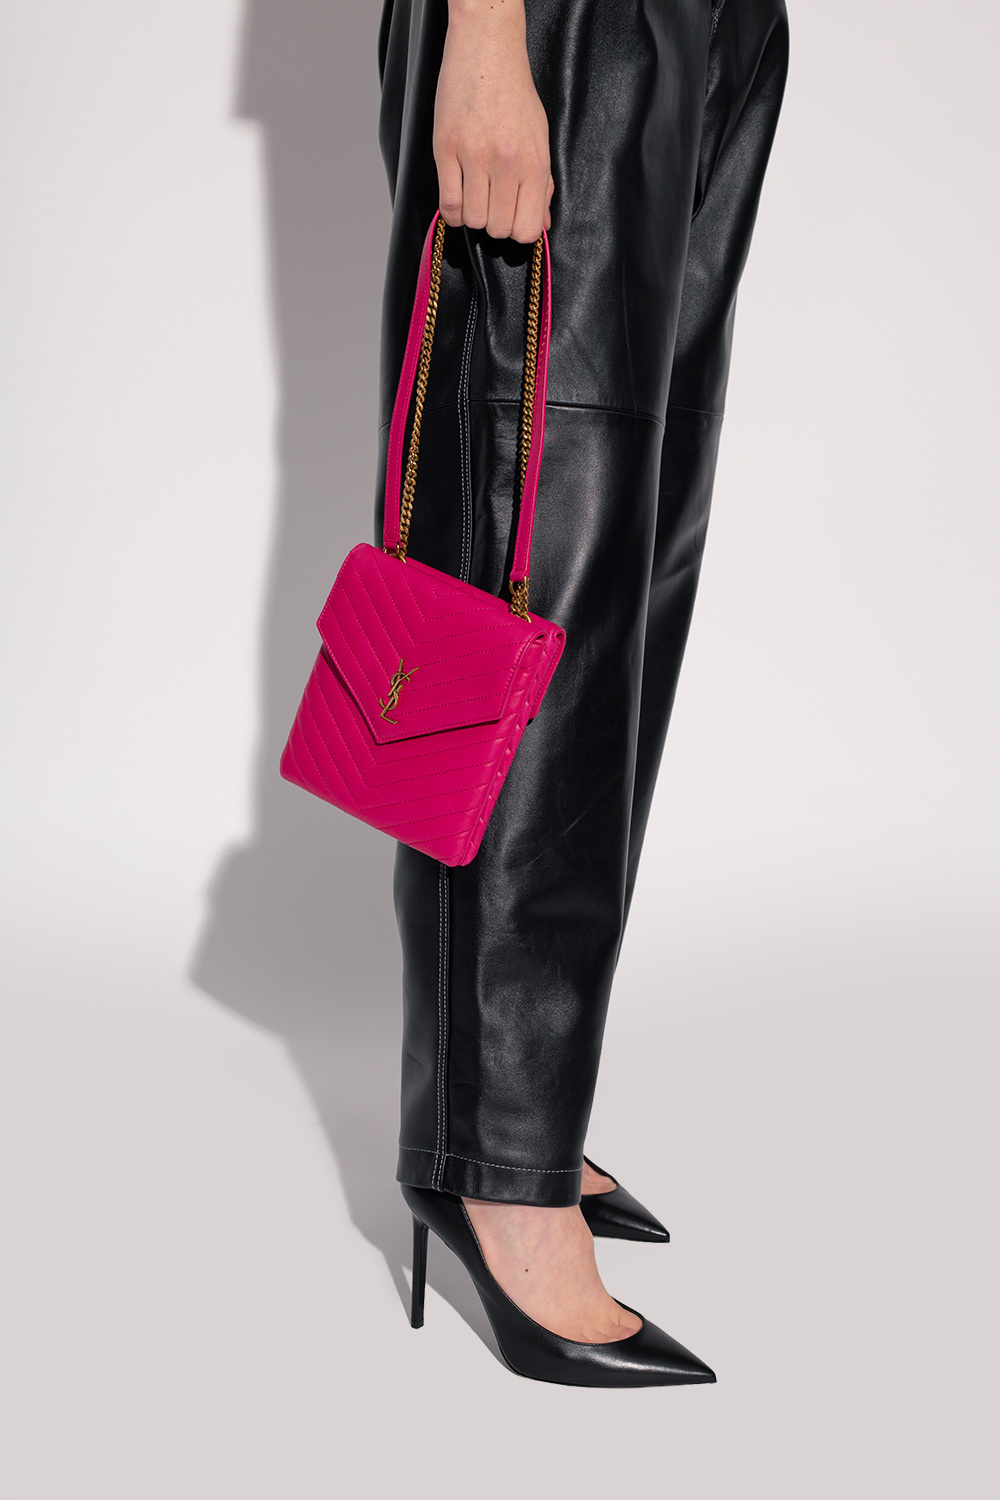 Saint Laurent 'Double Flap' shoulder bag, Women's Bags